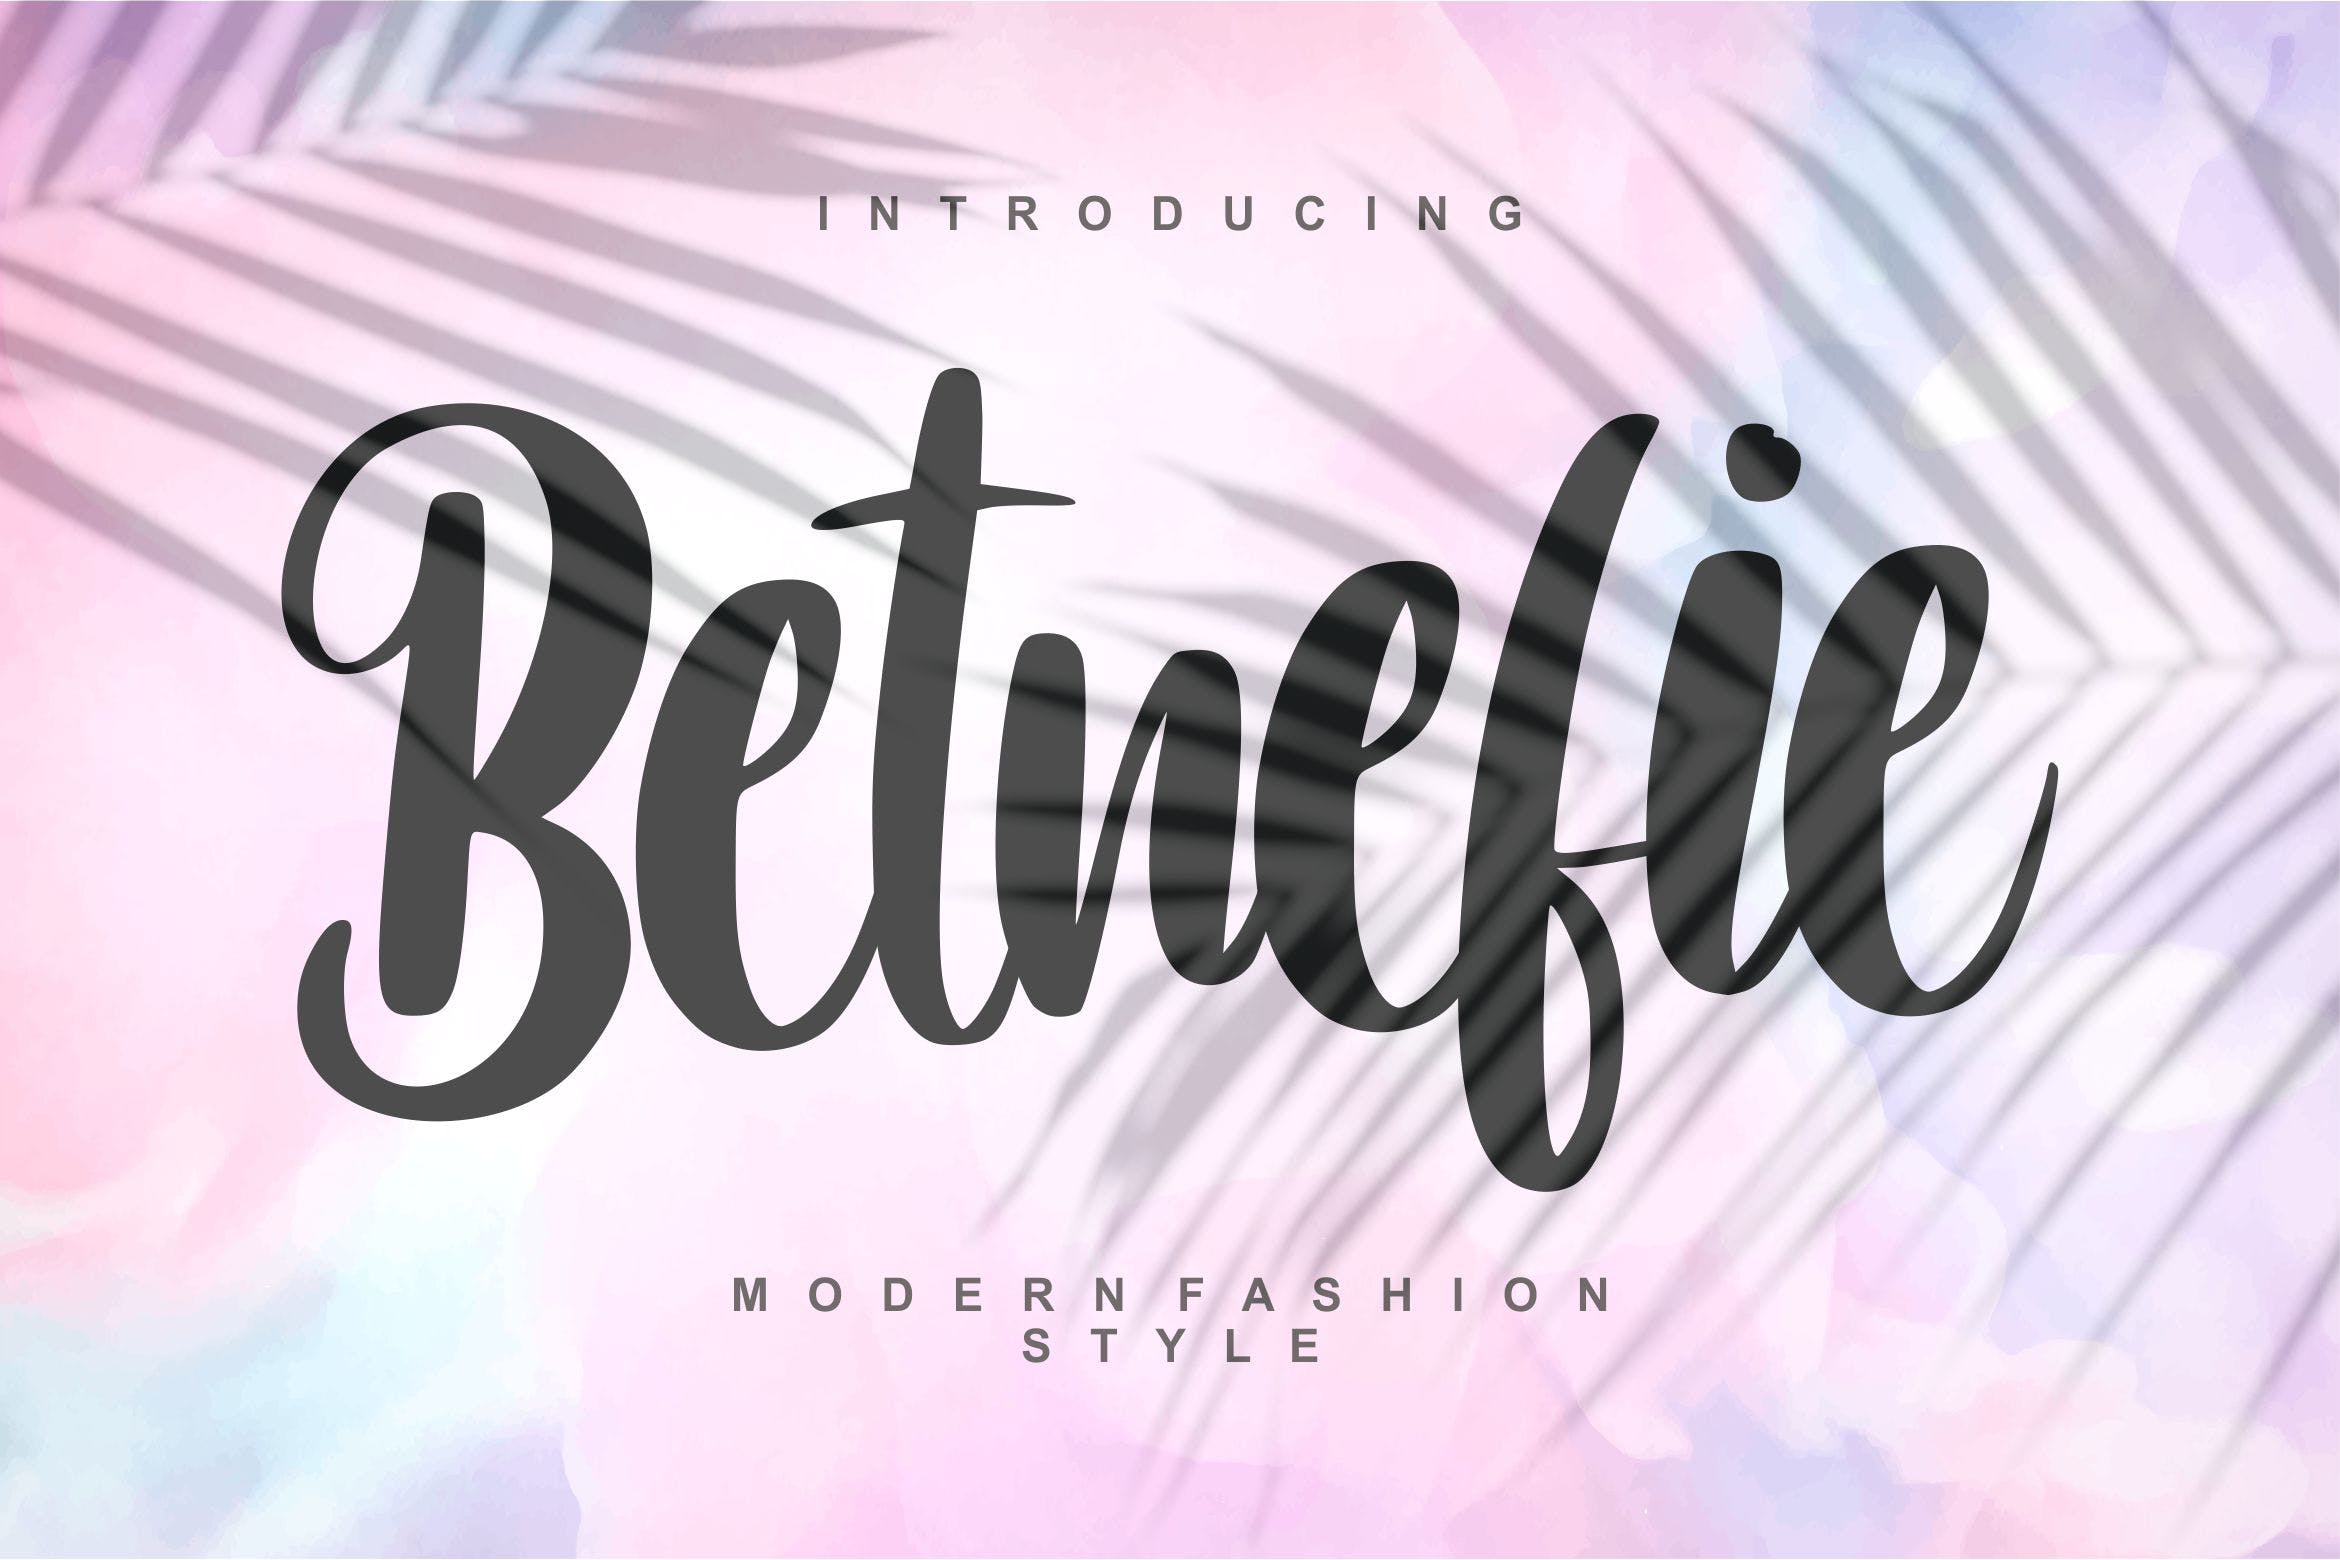 现代时尚风格英文书法字体第一素材精选 Betnefie | Modern Fashion Style Font插图